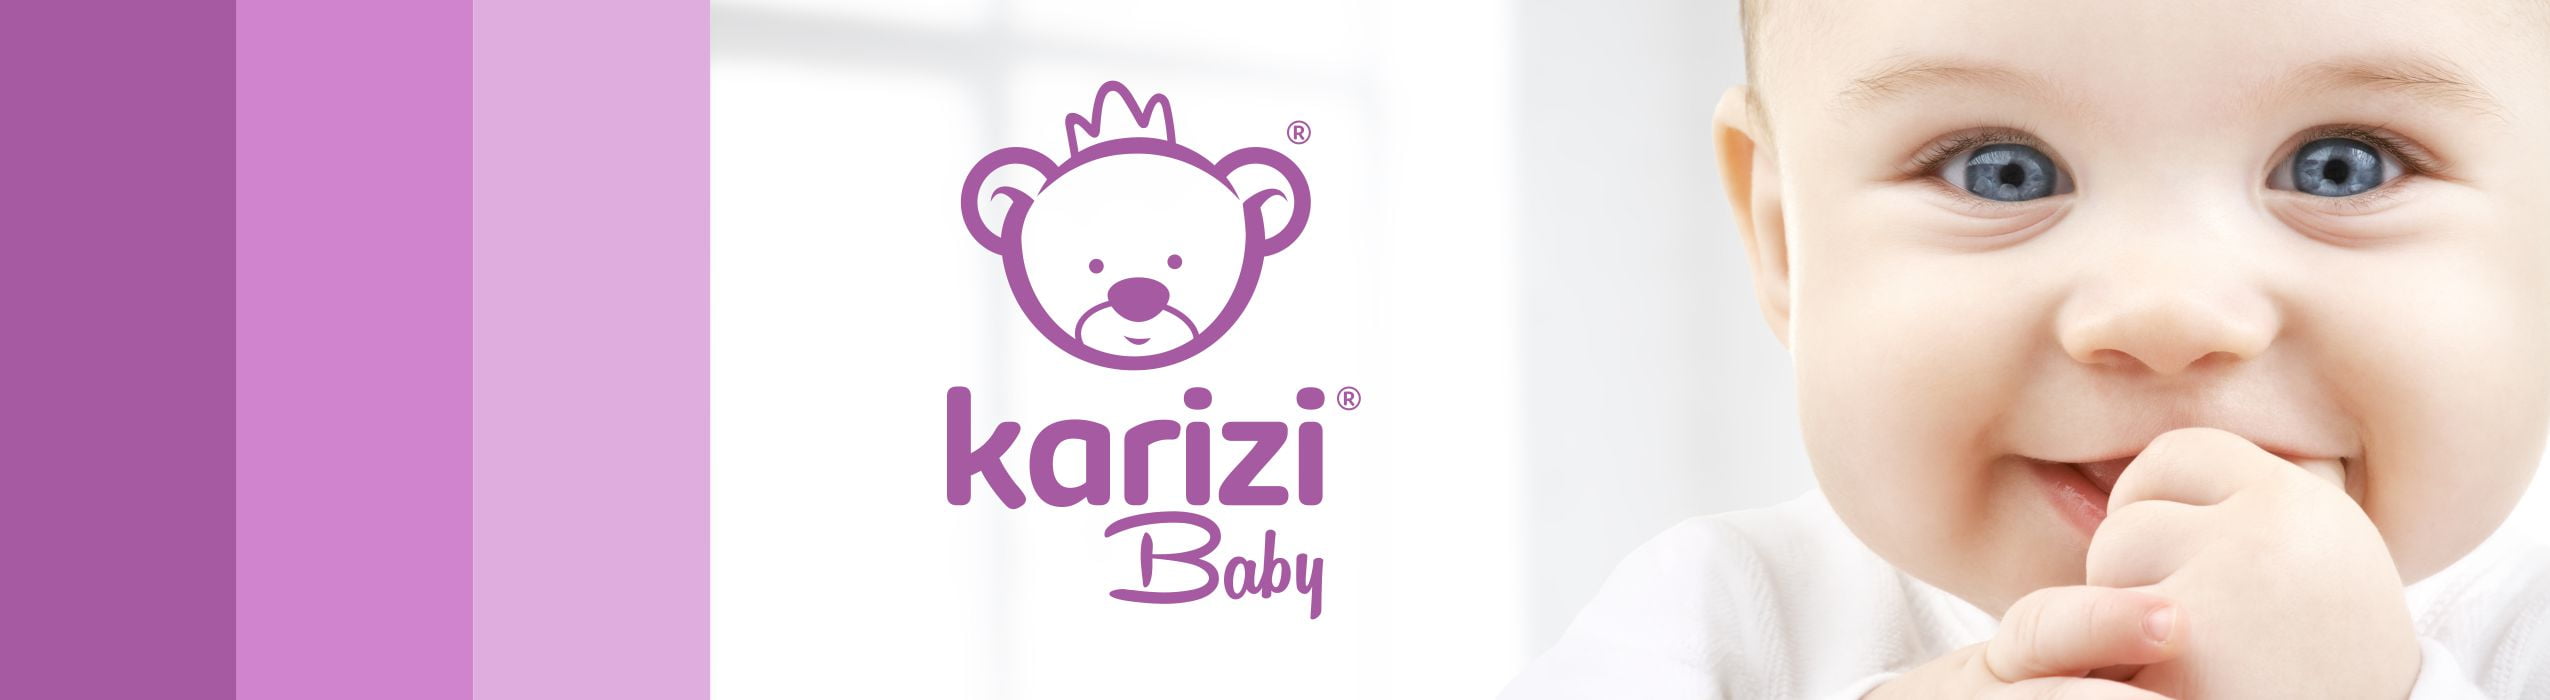 Karizi Baby Store